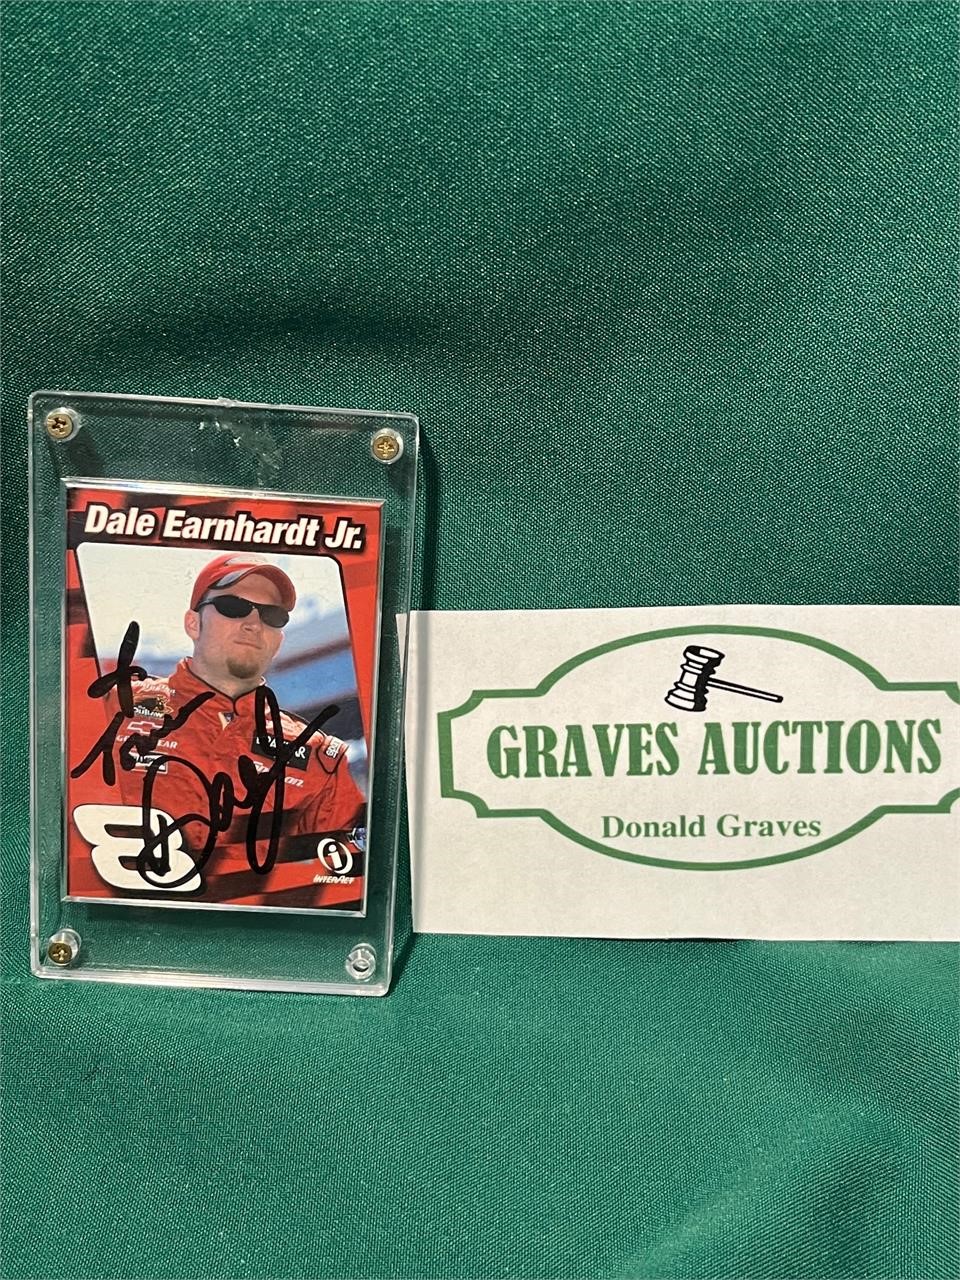 Dale Earnhardt Jr Autographed Card